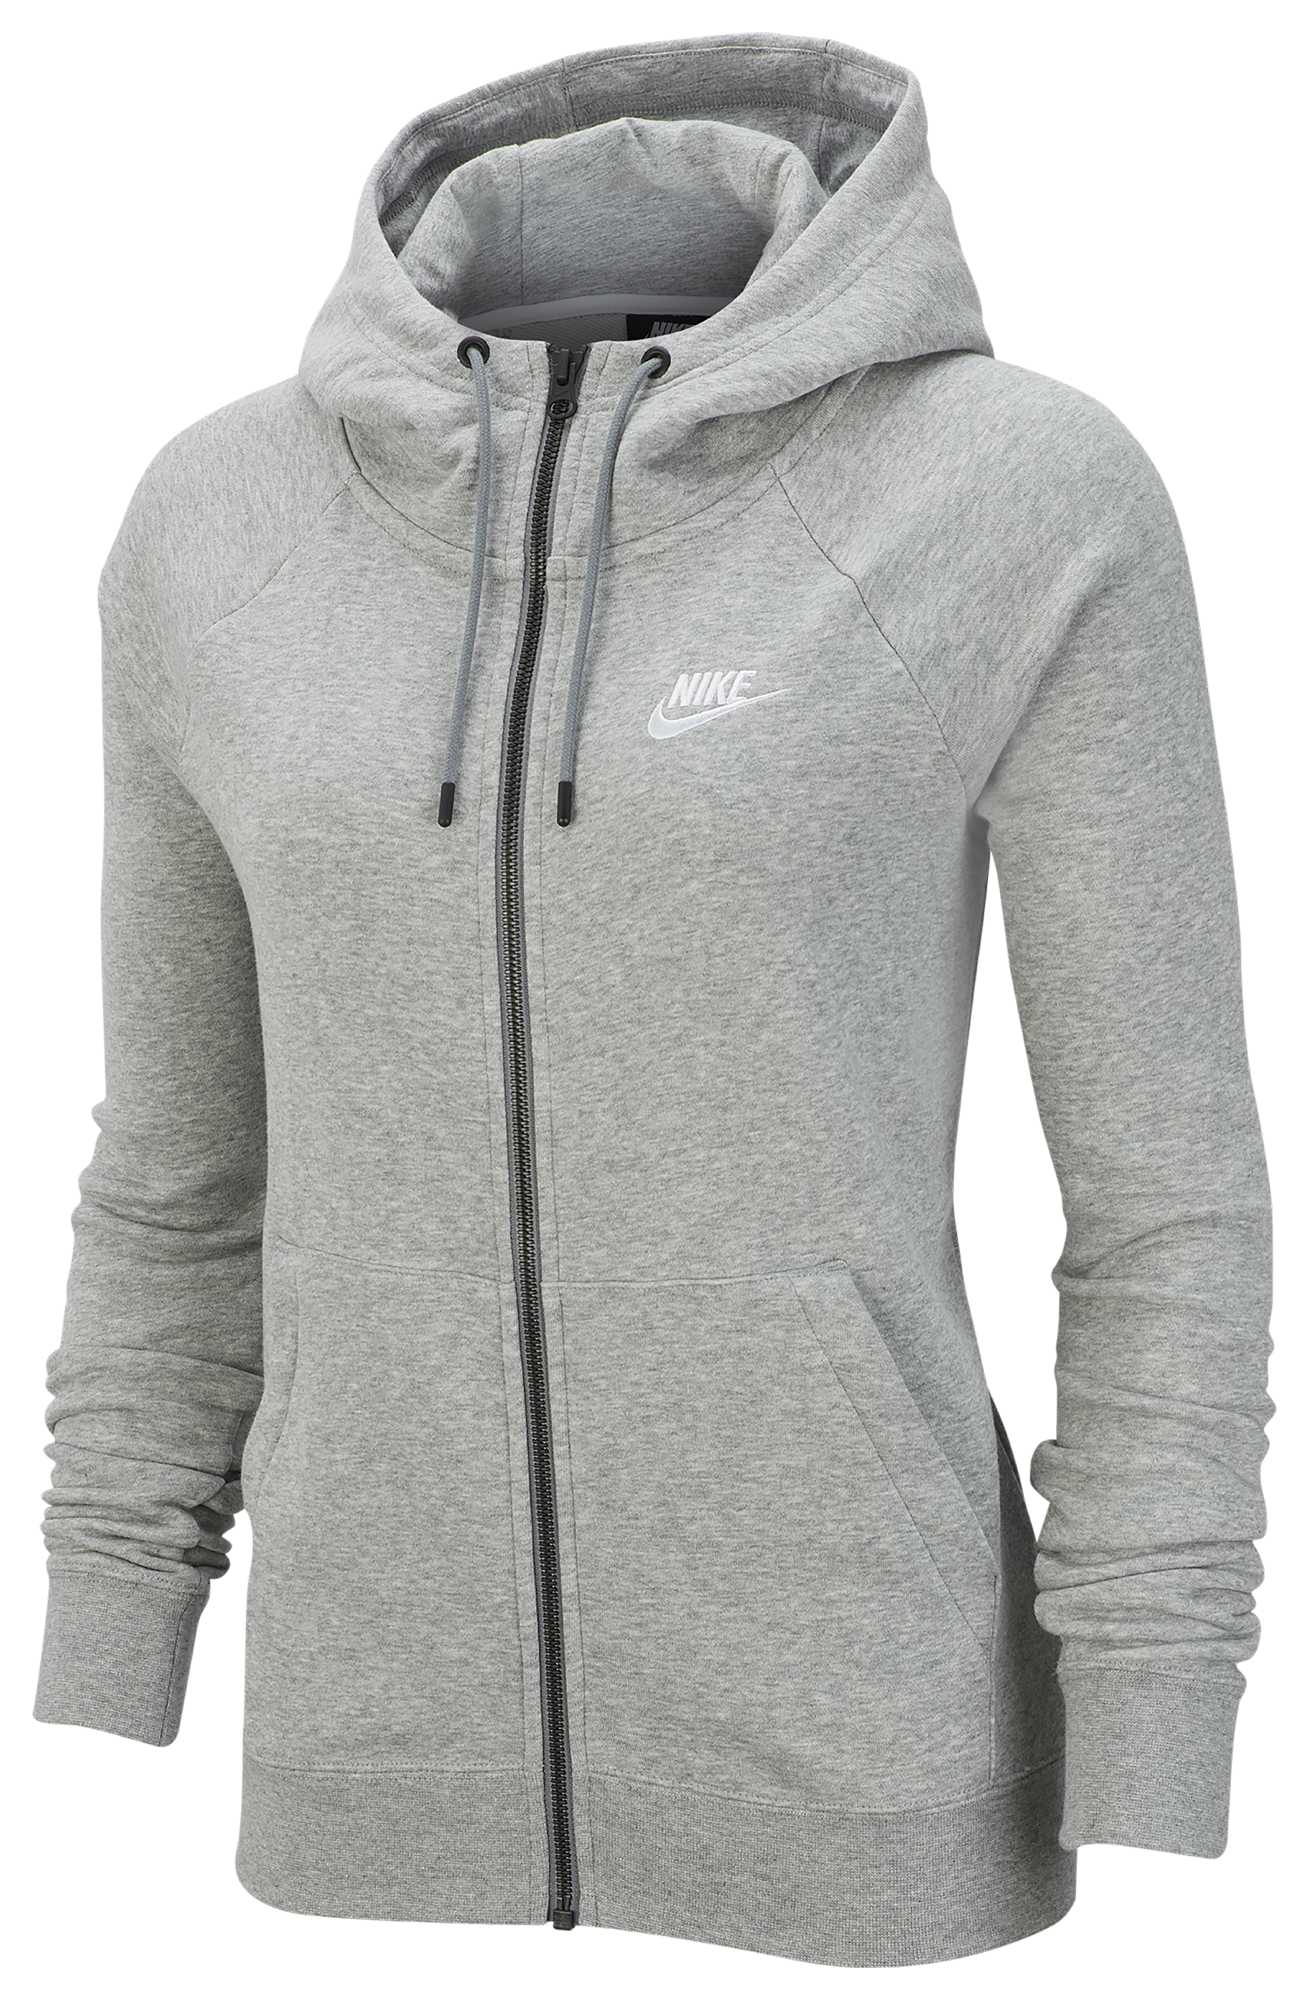 nike zip up hoodie womens grey